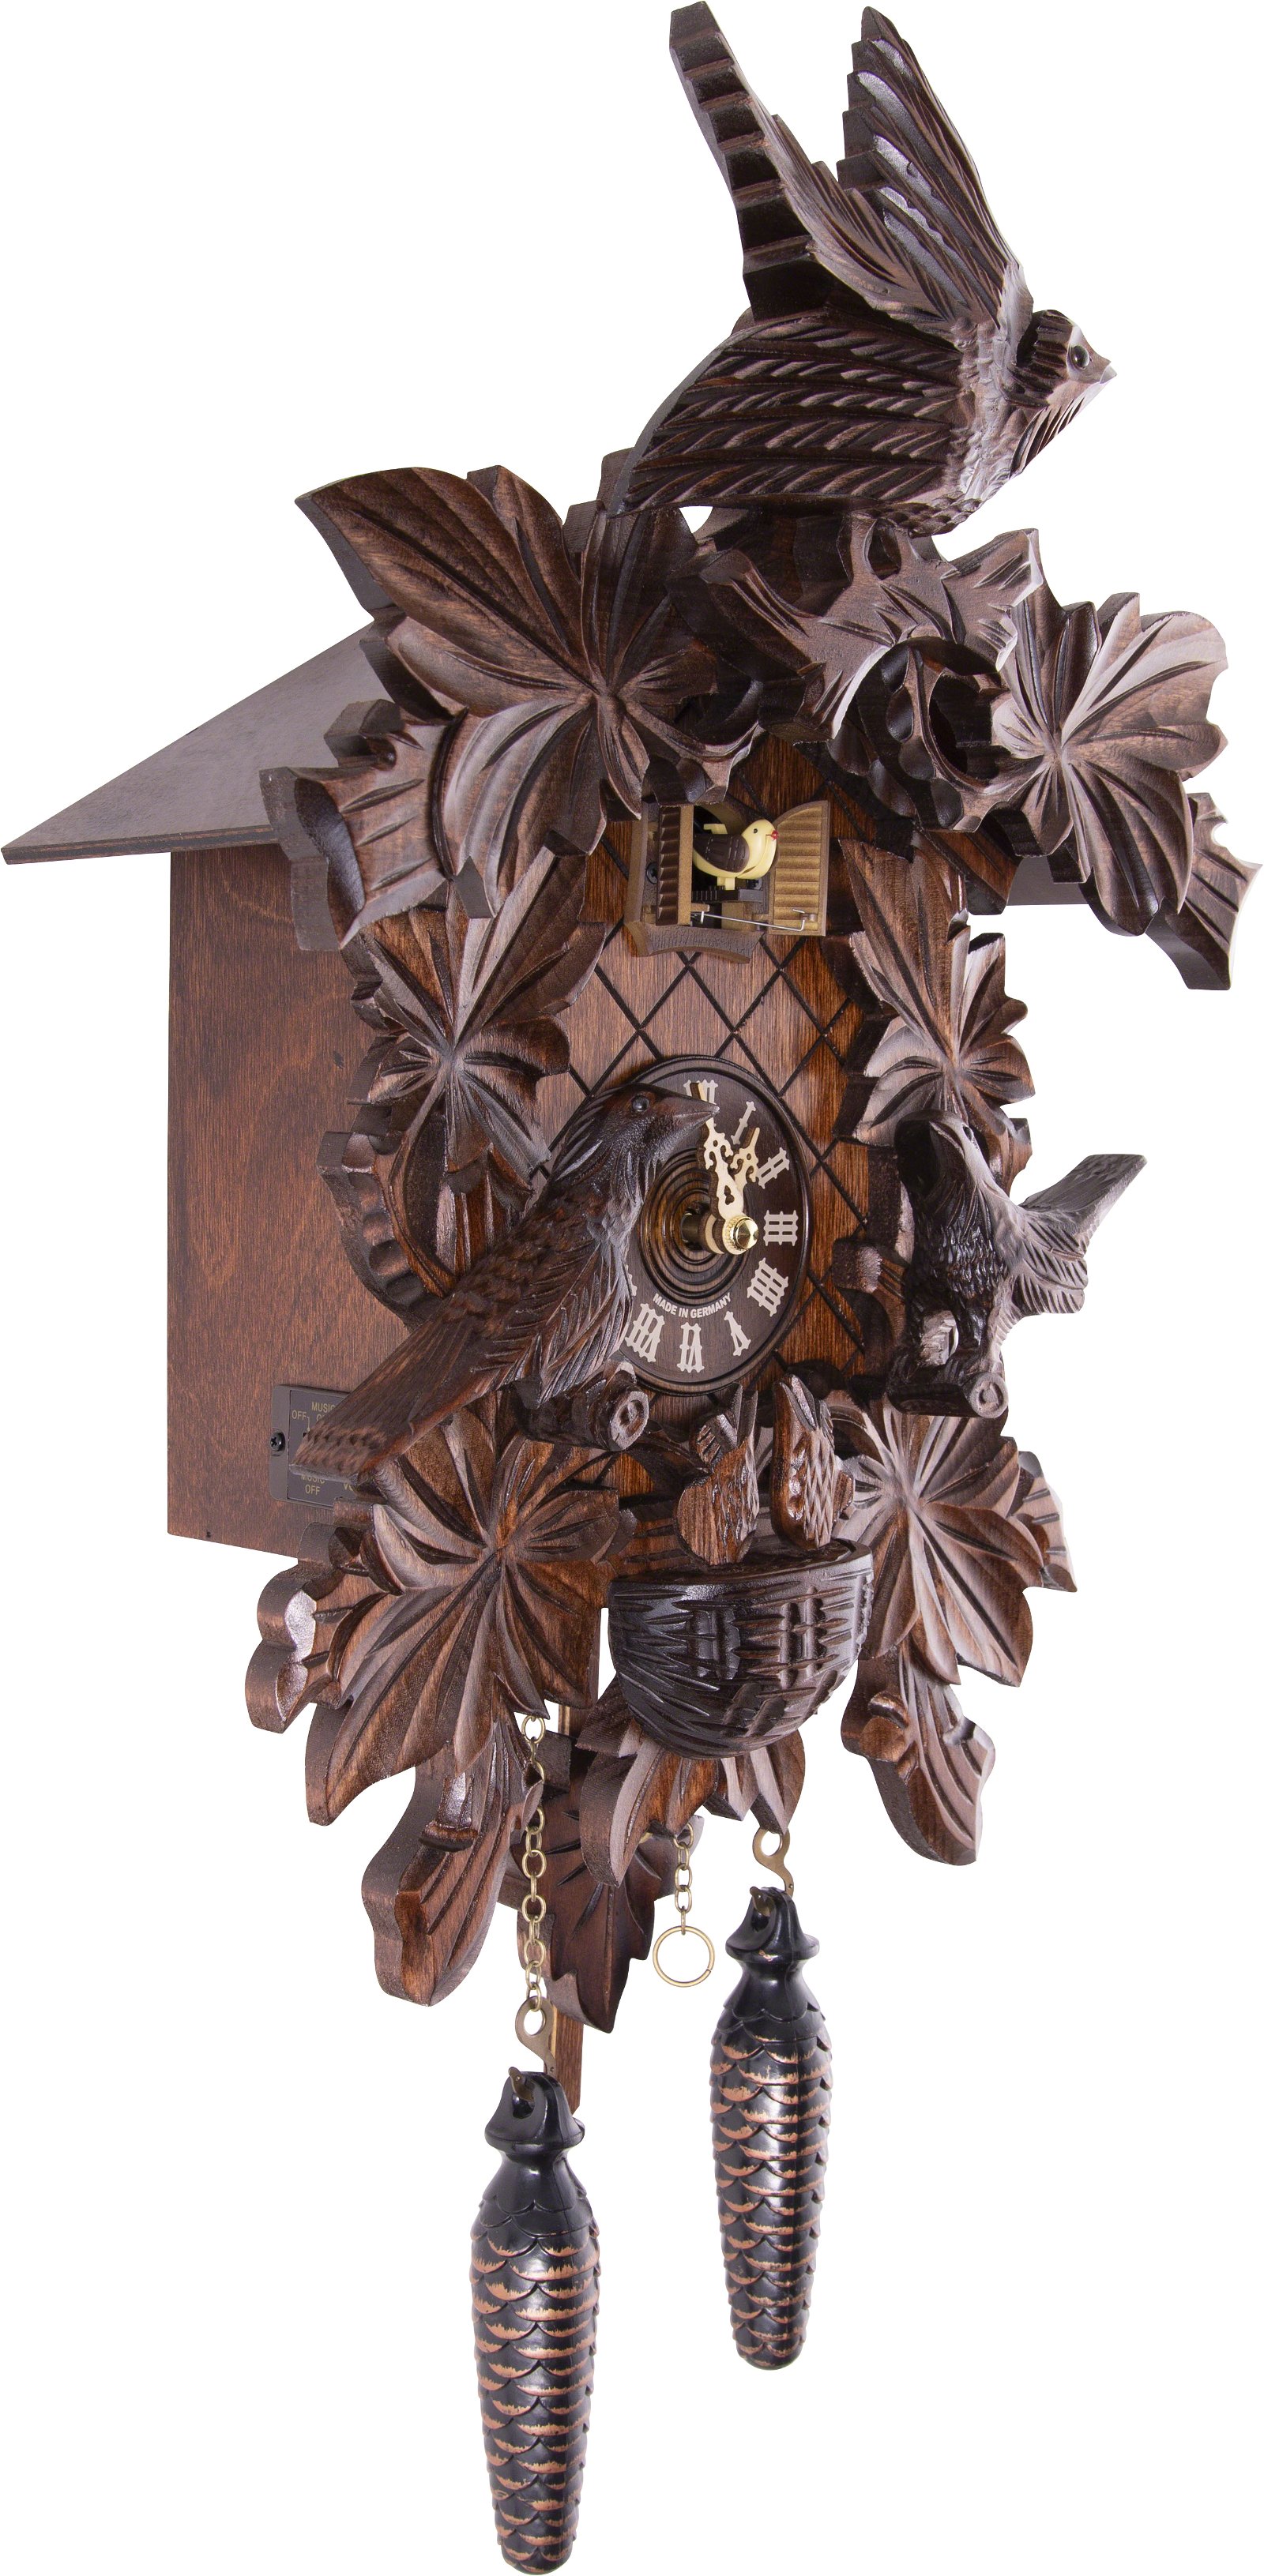 Horloge coucou traditionnelle mouvement à quartz 46cm de Trenkle Uhren